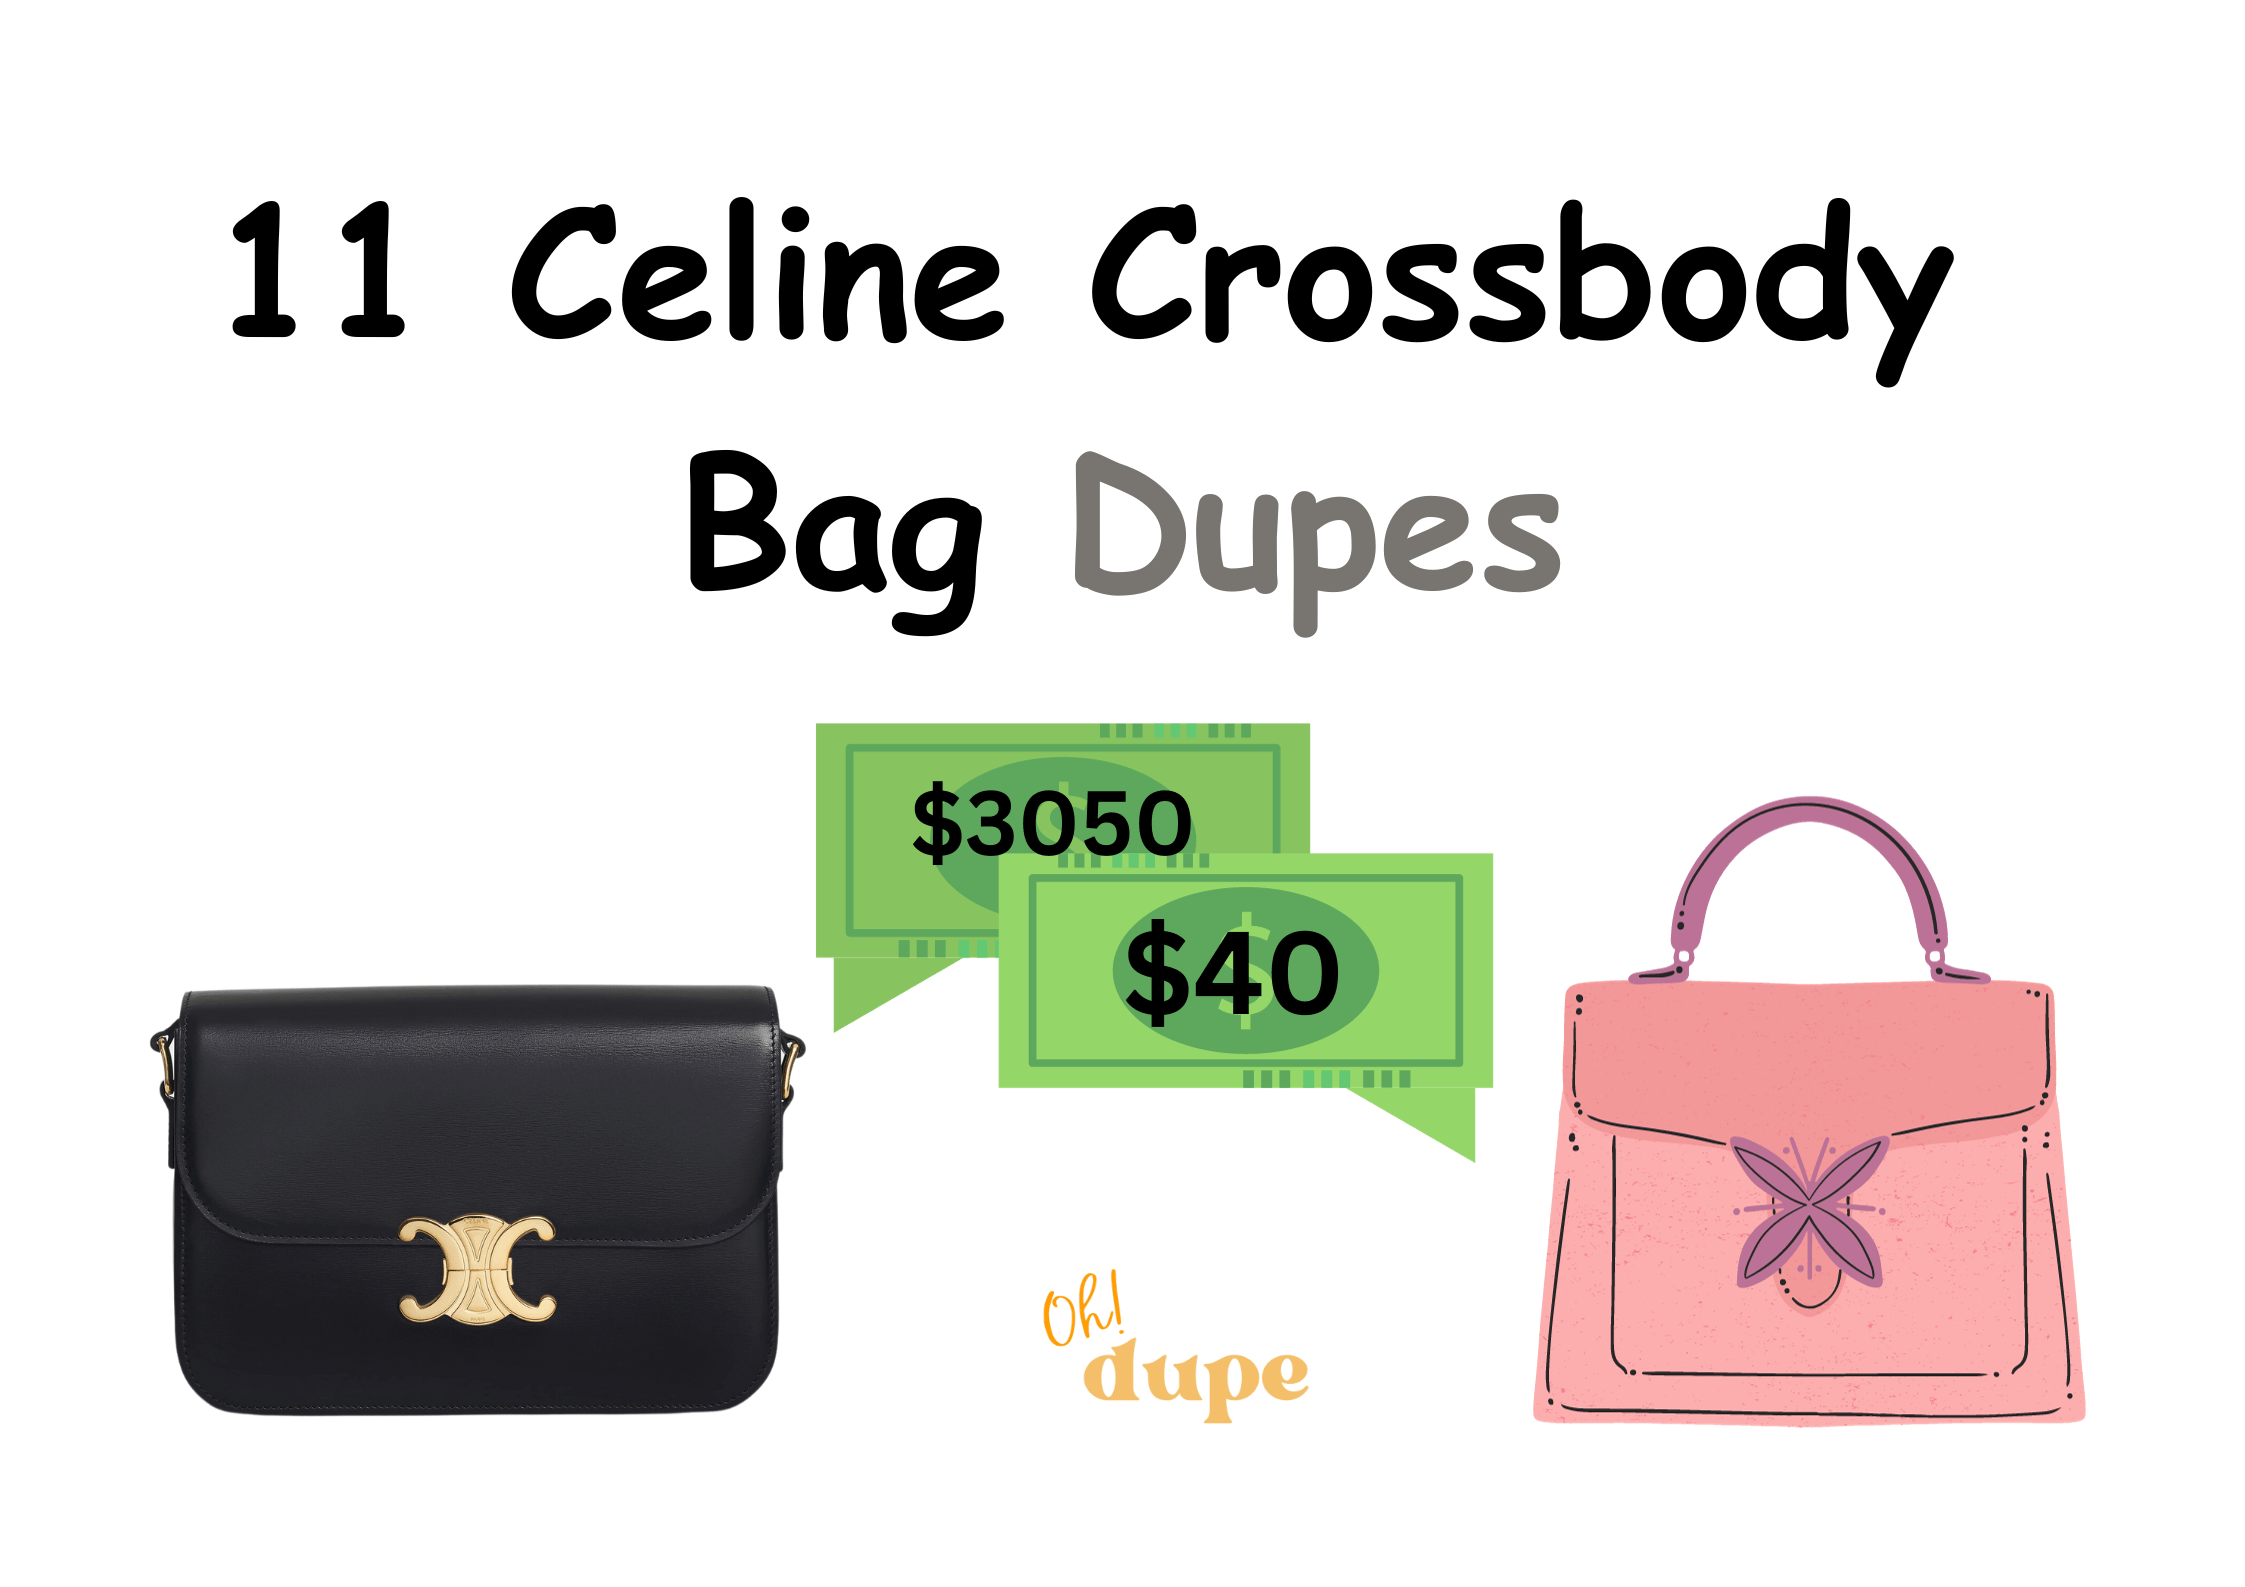 Celine Crossbody Bag Dupe